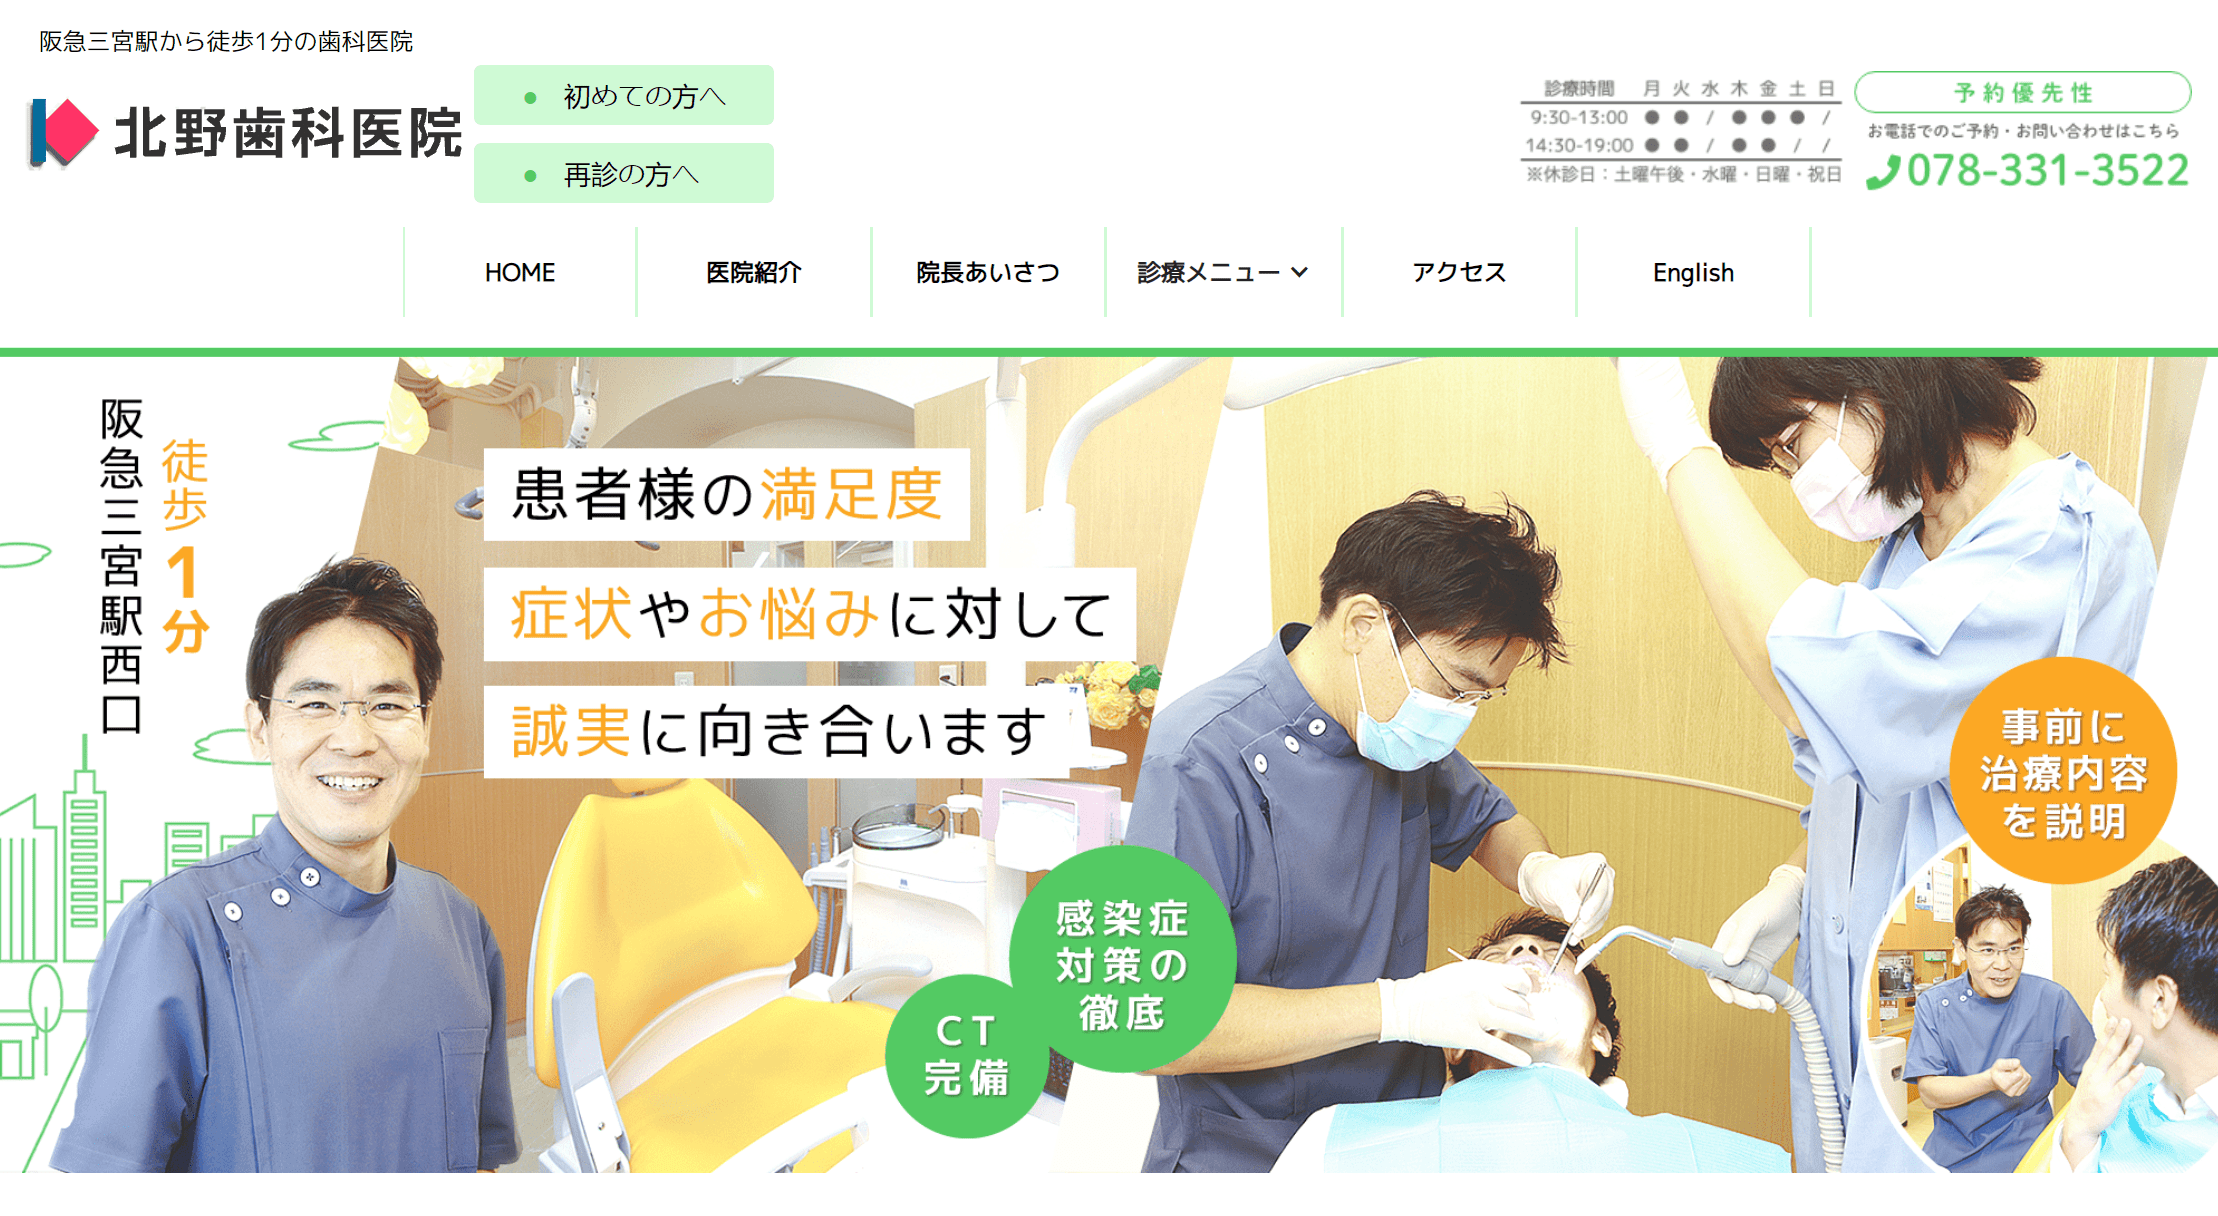 Teeth Whitening in Japan